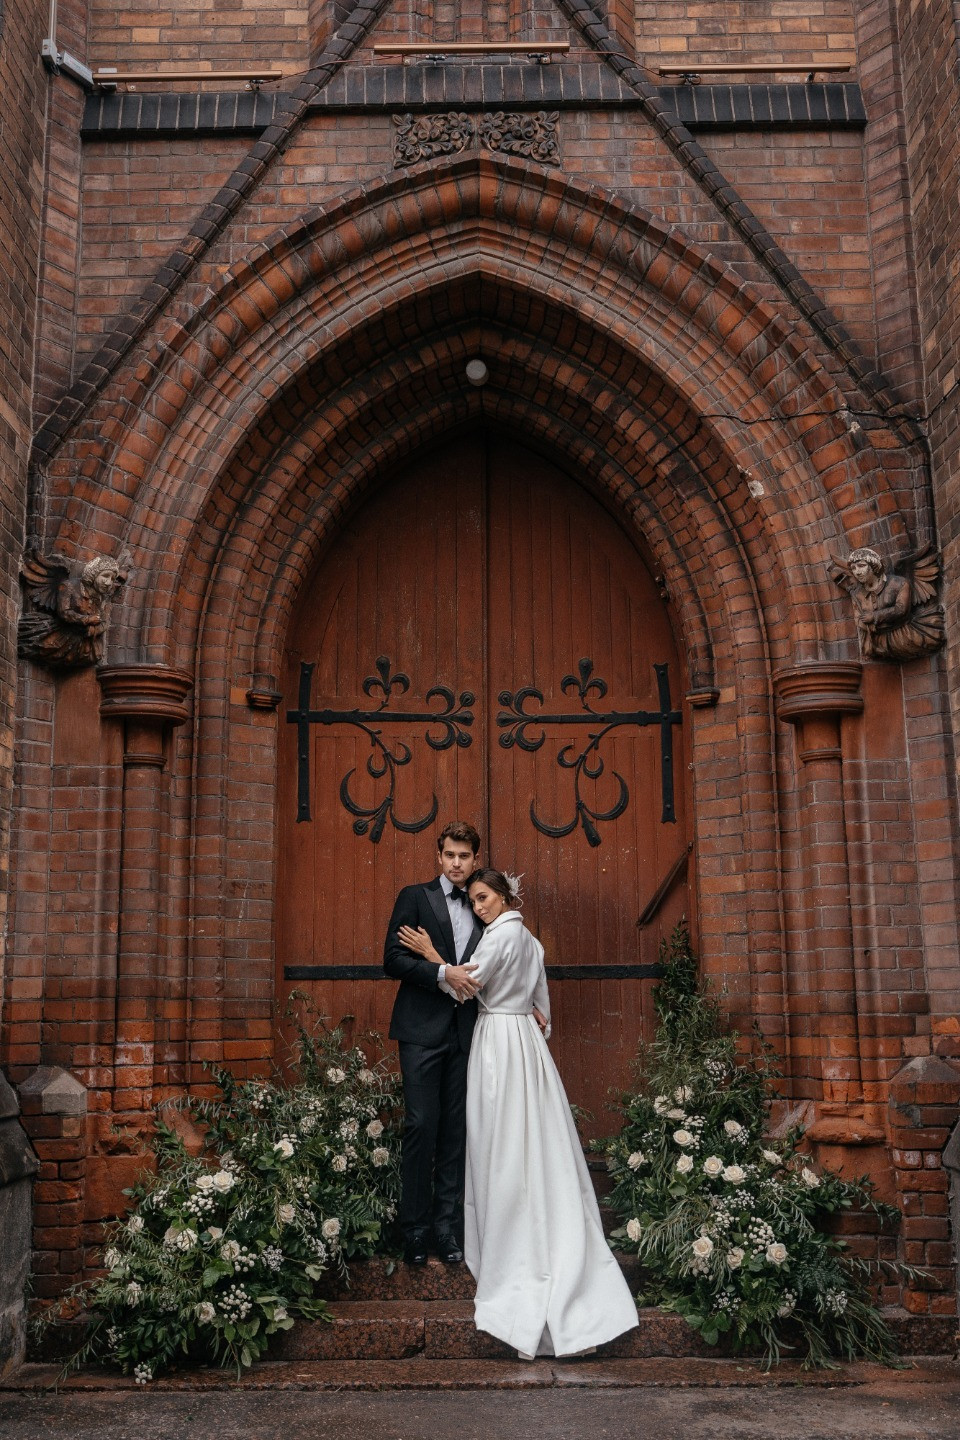 Church wedding: стилизованная фотосессия в Англиканской церкви